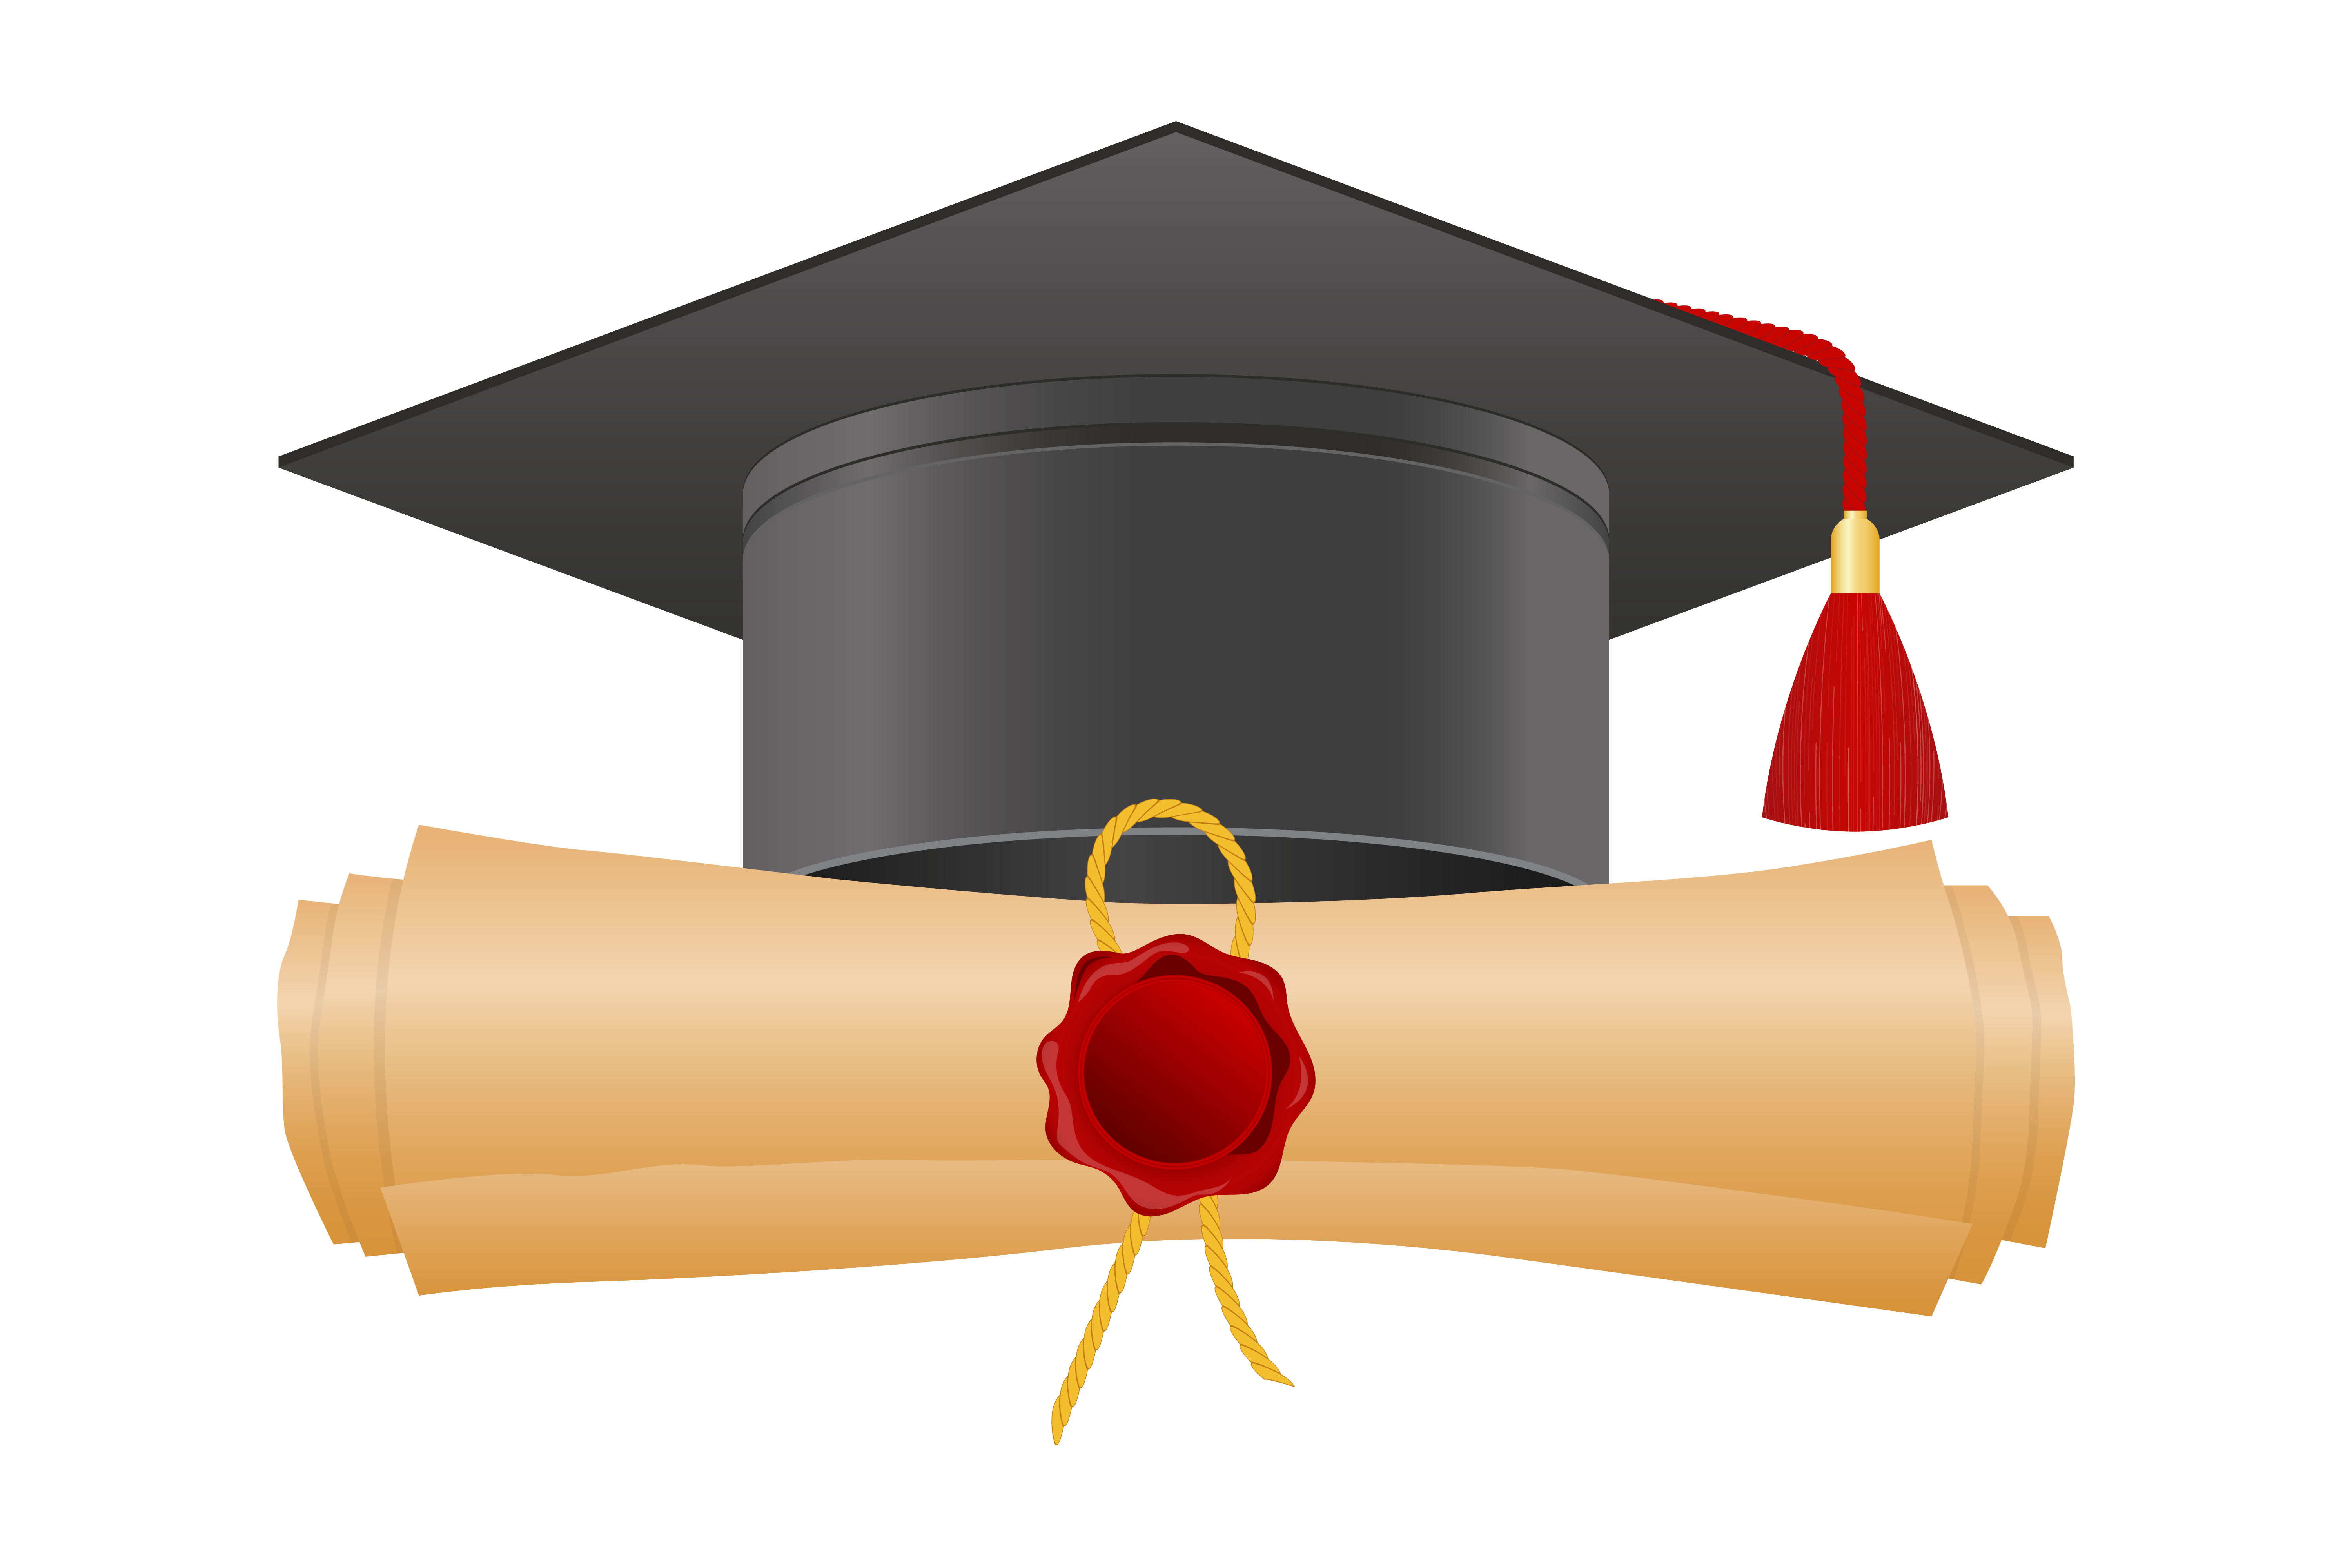 Download Graduation cap and diploma design - Download Free Vectors, Clipart Graphics & Vector Art